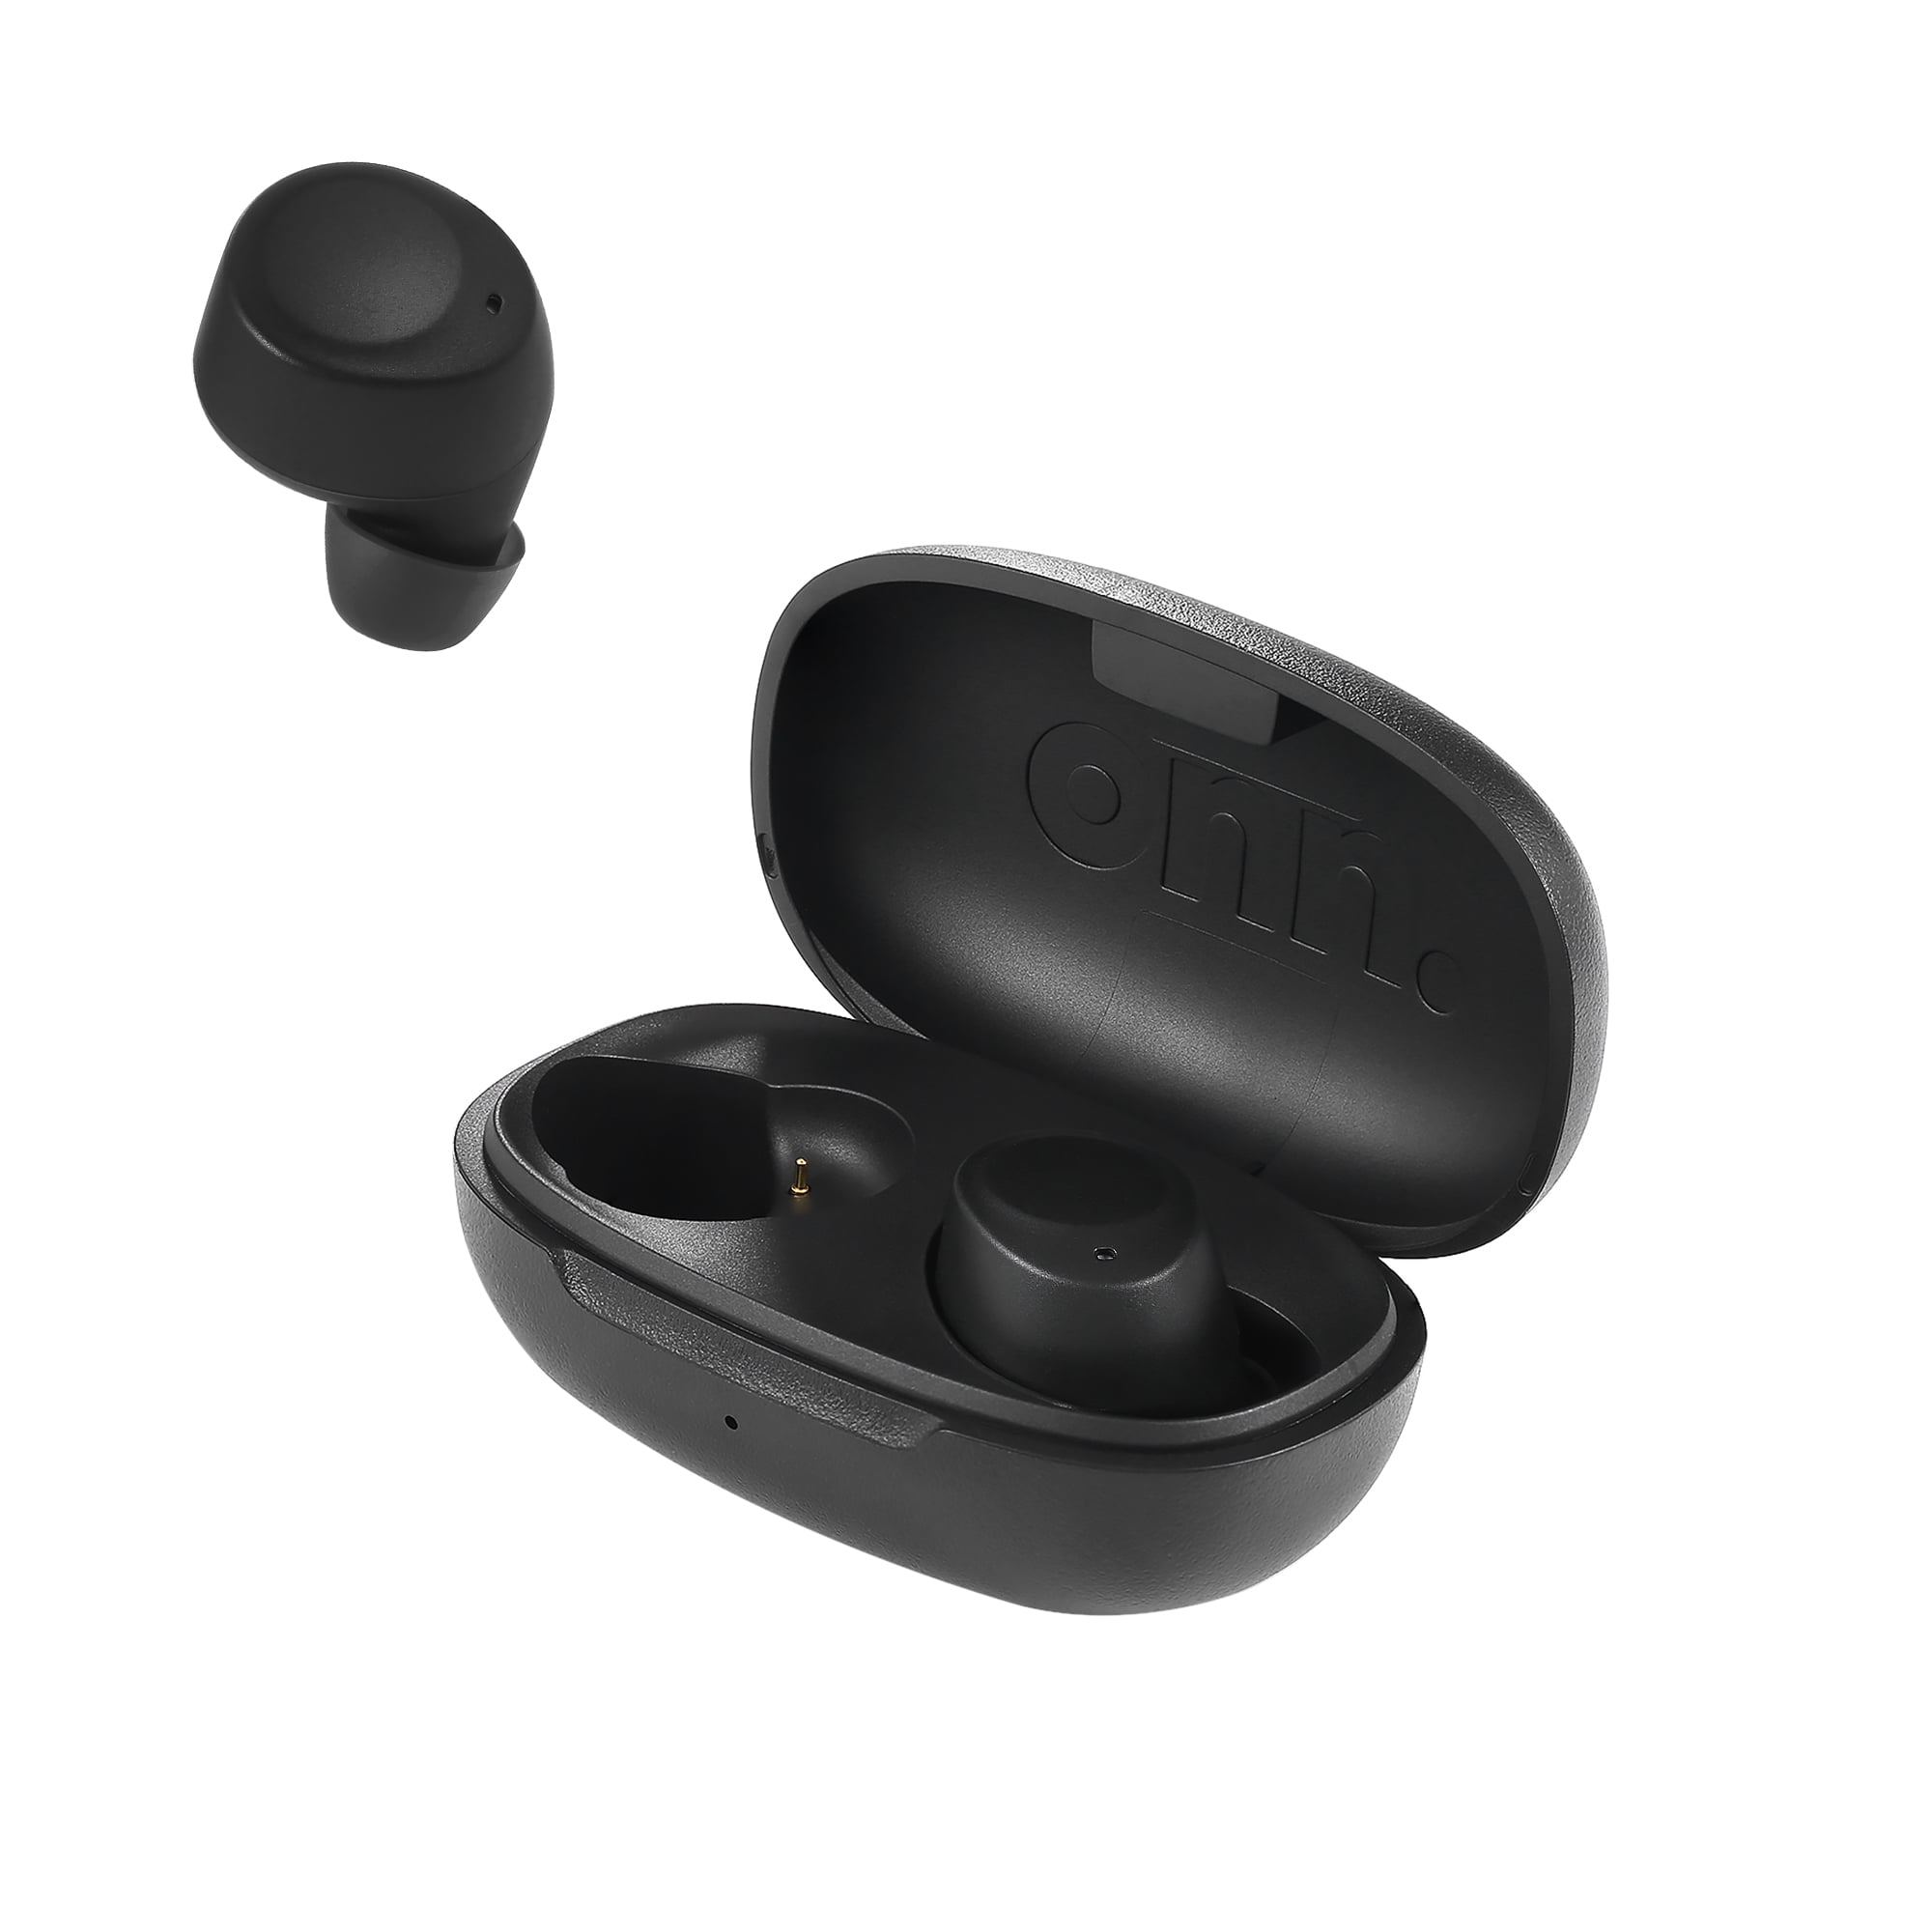 Onn. in-Ear Bluetooth Wireless Earphones with Charging Case,Black